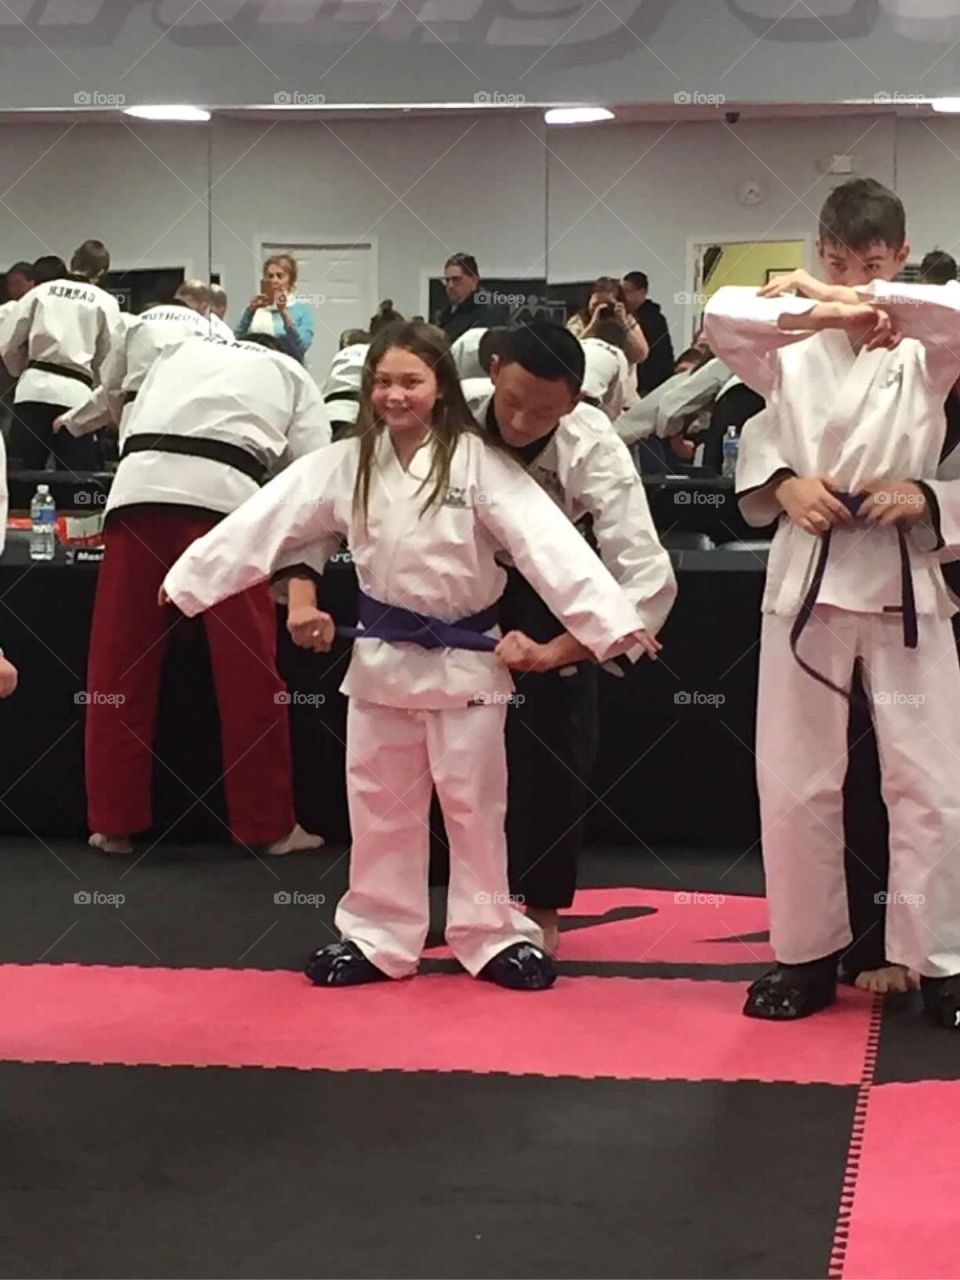 My daughter receiving her purple belt in karate. 